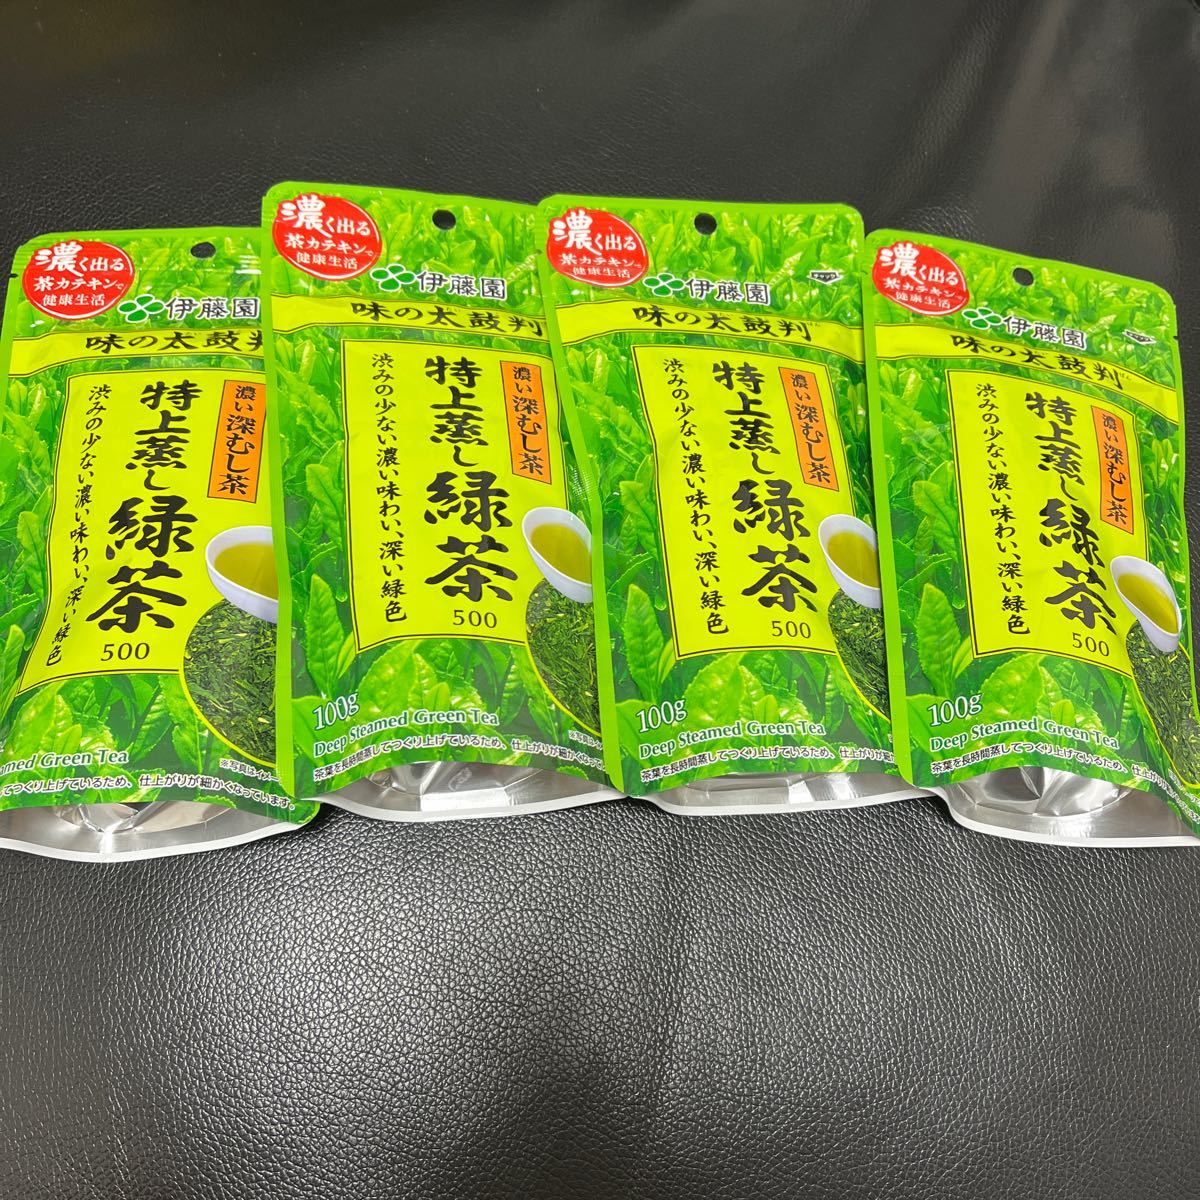 伊藤園 味の太鼓判 特上蒸し緑茶500 100g